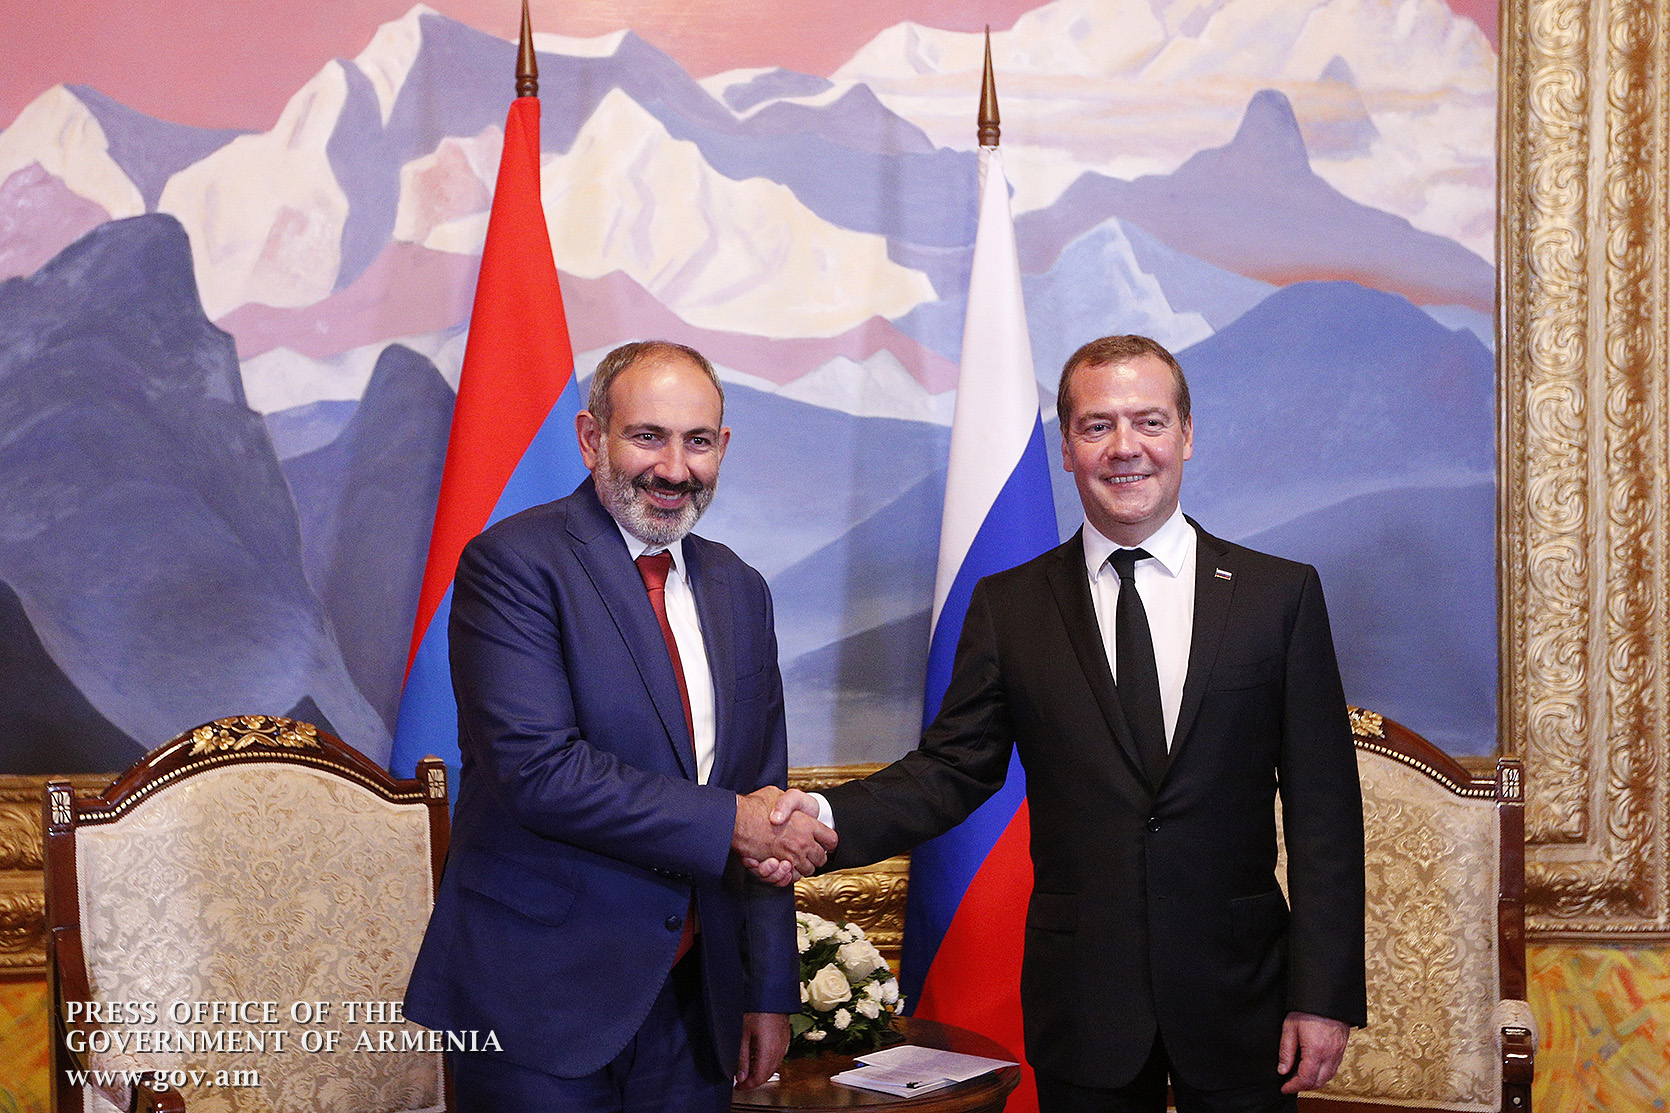 Газ, атомная энергетика, авиаперевозки: в Киргизии состоялась встреча Пашинян – Медведев 